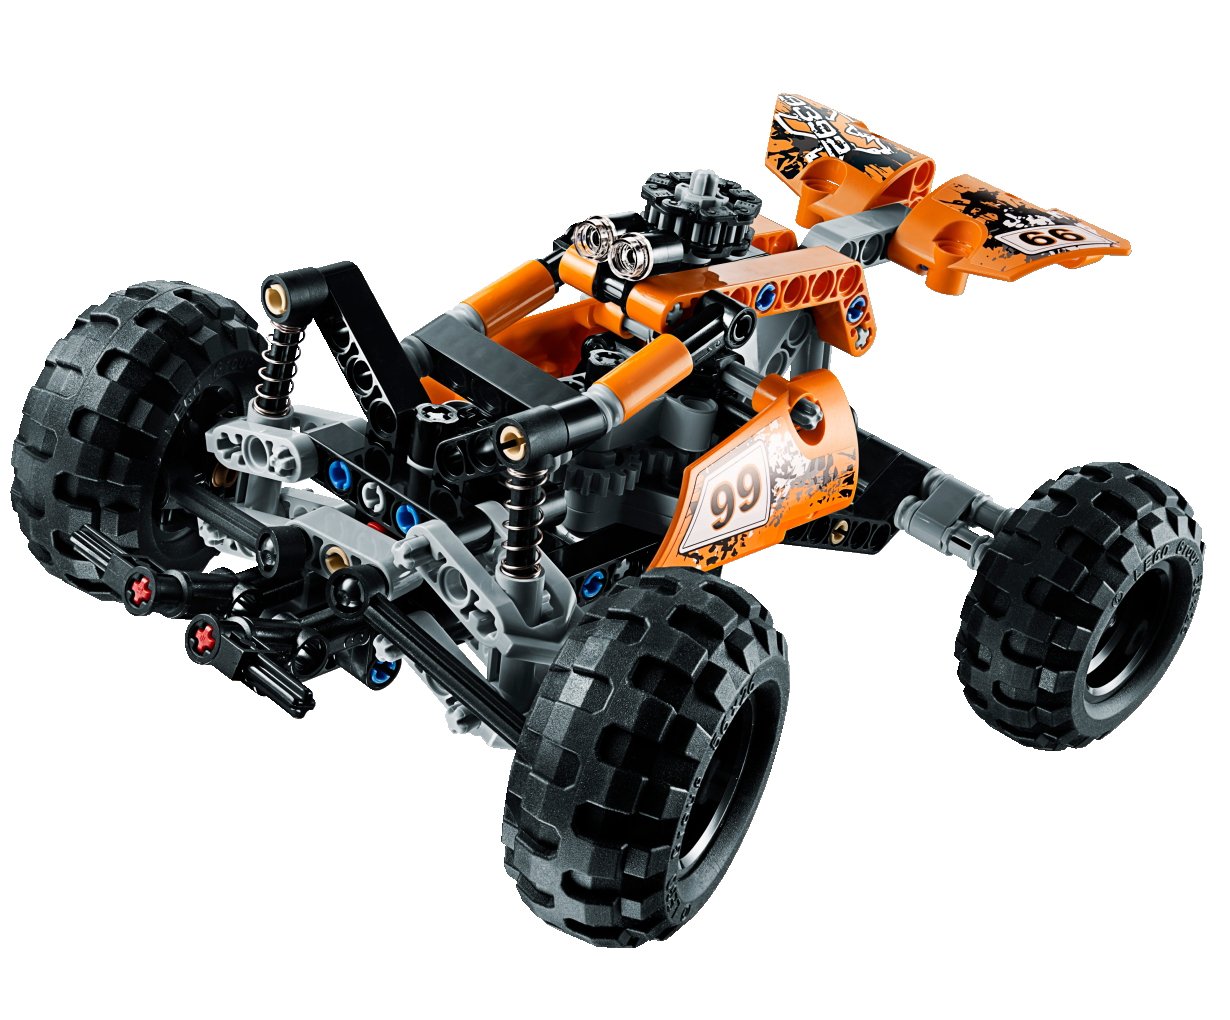 LEGO Technic Quad Bike 9392